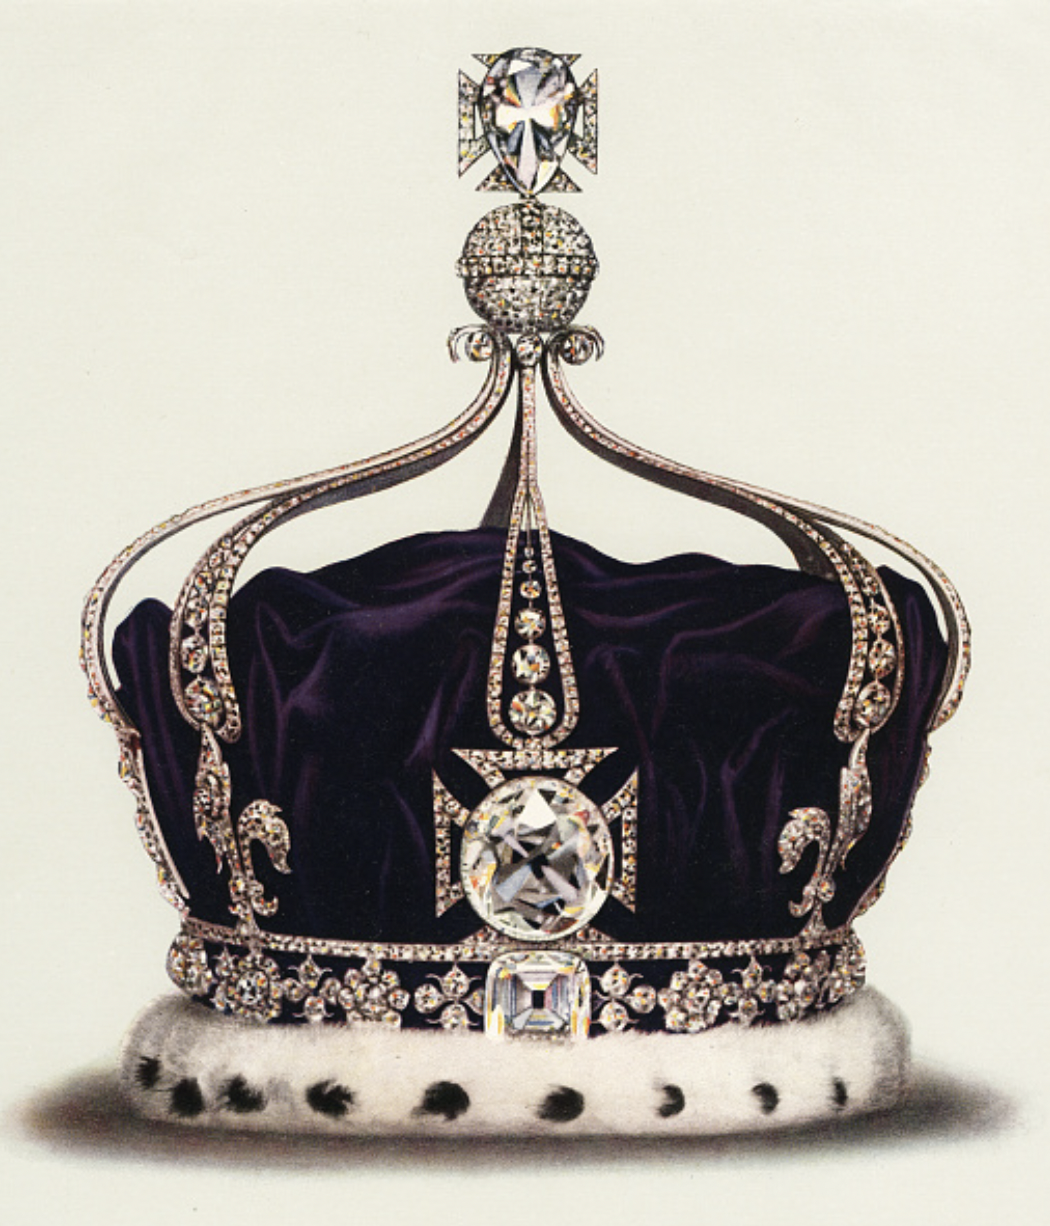 Le diamant koh i noor serti sur la couronne royale de la famille britannique exposé à la tour de londres